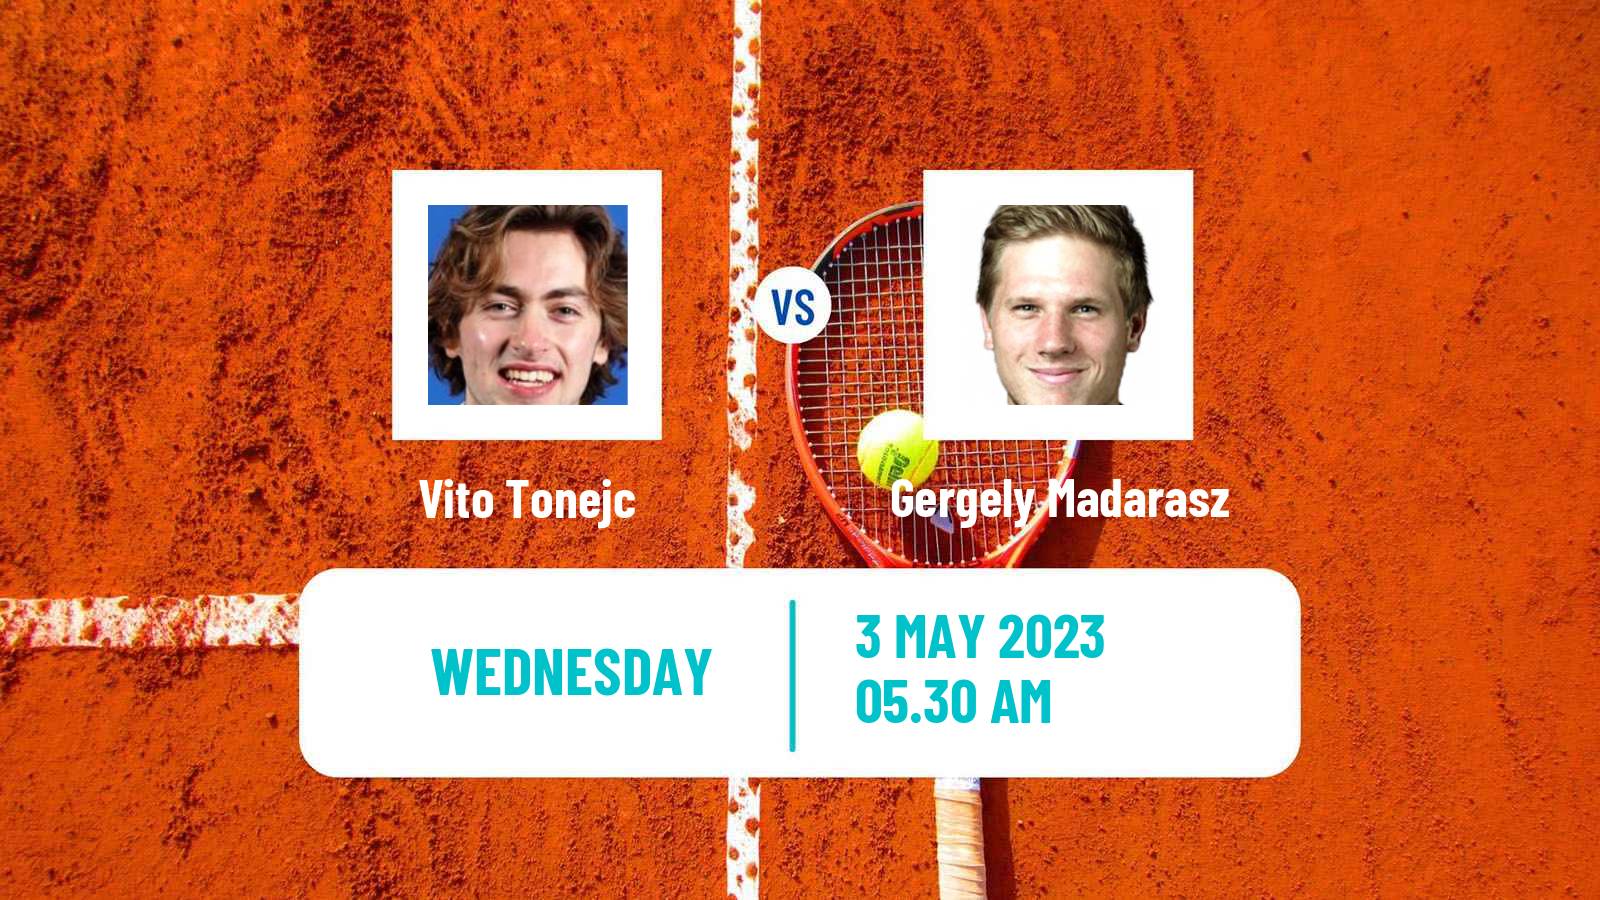 Tennis ITF Tournaments Vito Tonejc - Gergely Madarasz